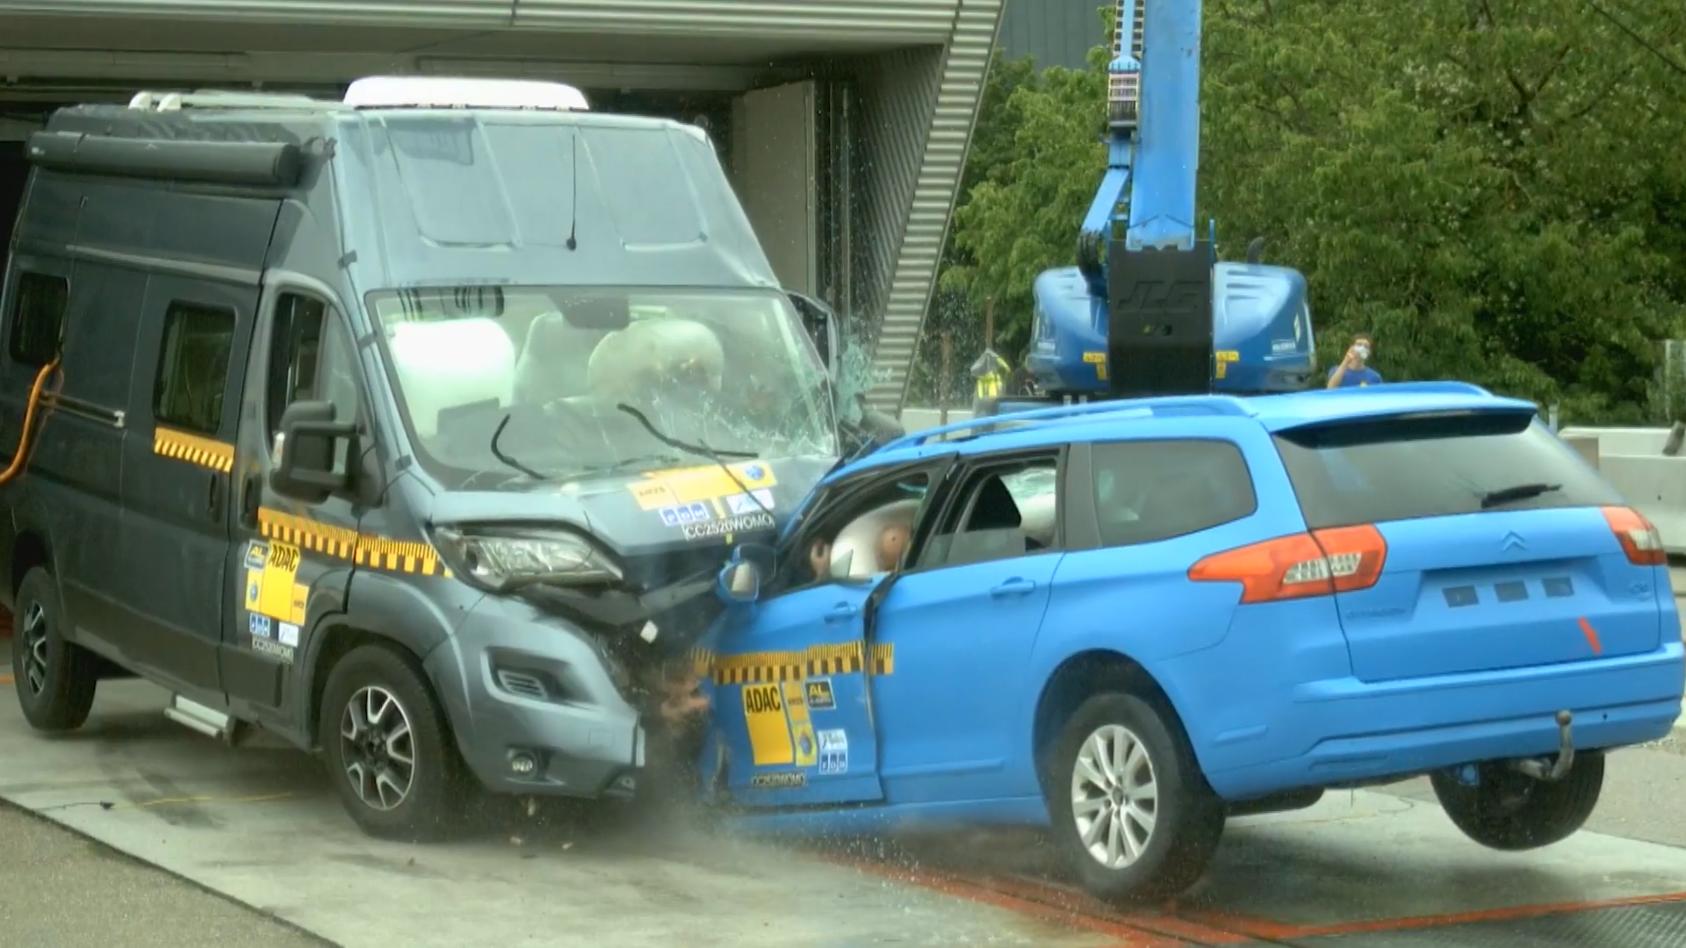 Wohnmobil-Crashtest zeigt: So fatal kann ein Unfall ausgehen Schwere Verletzungen drohen